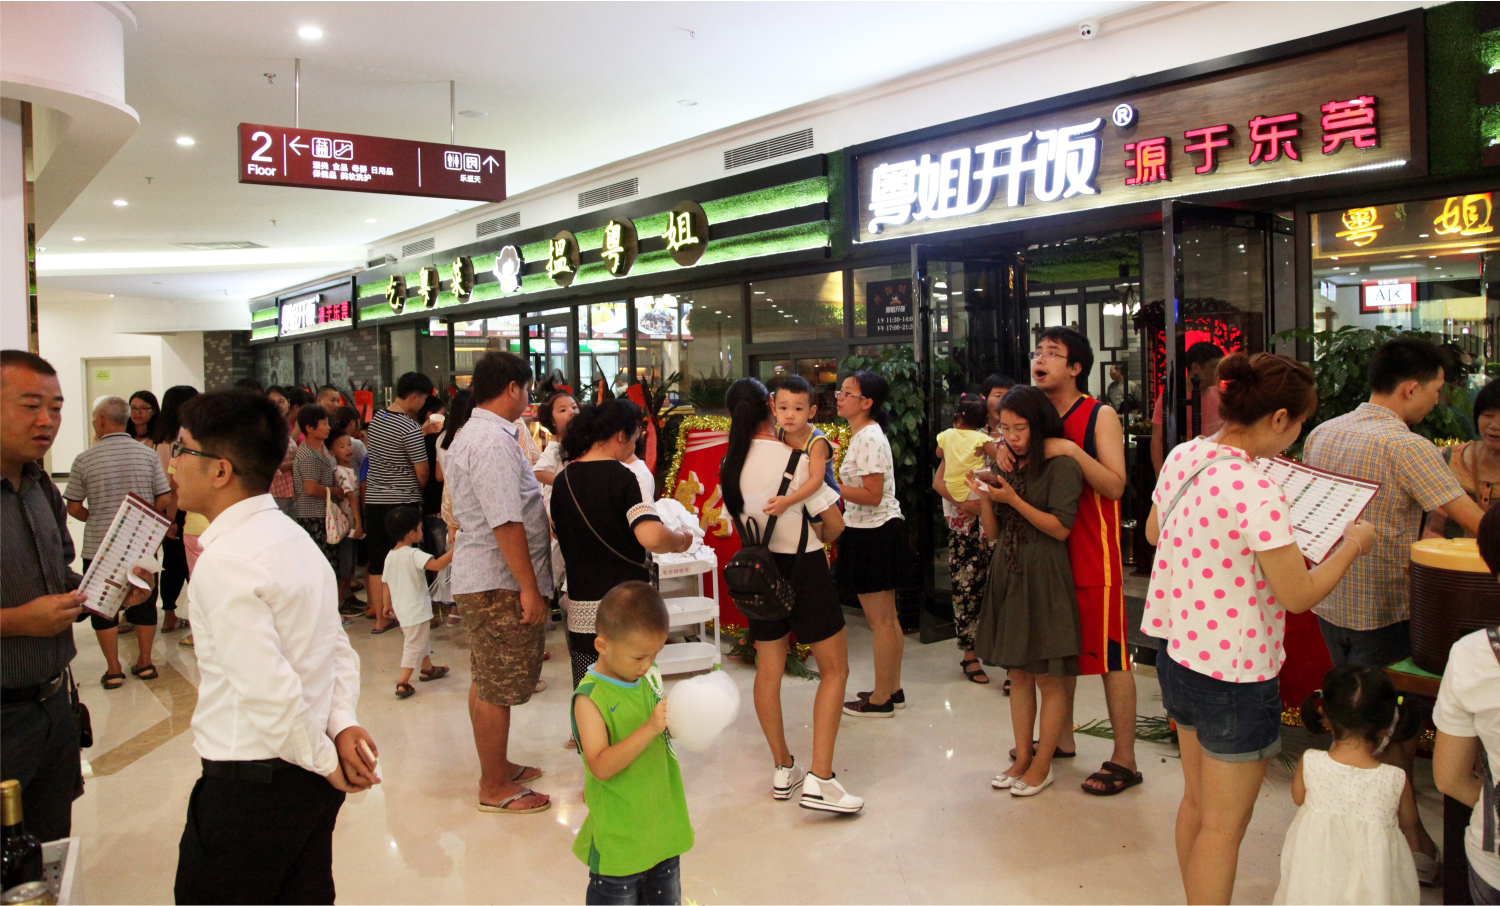 客家菜怎样通过深圳餐饮策划，让更多的人知道你的餐厅？